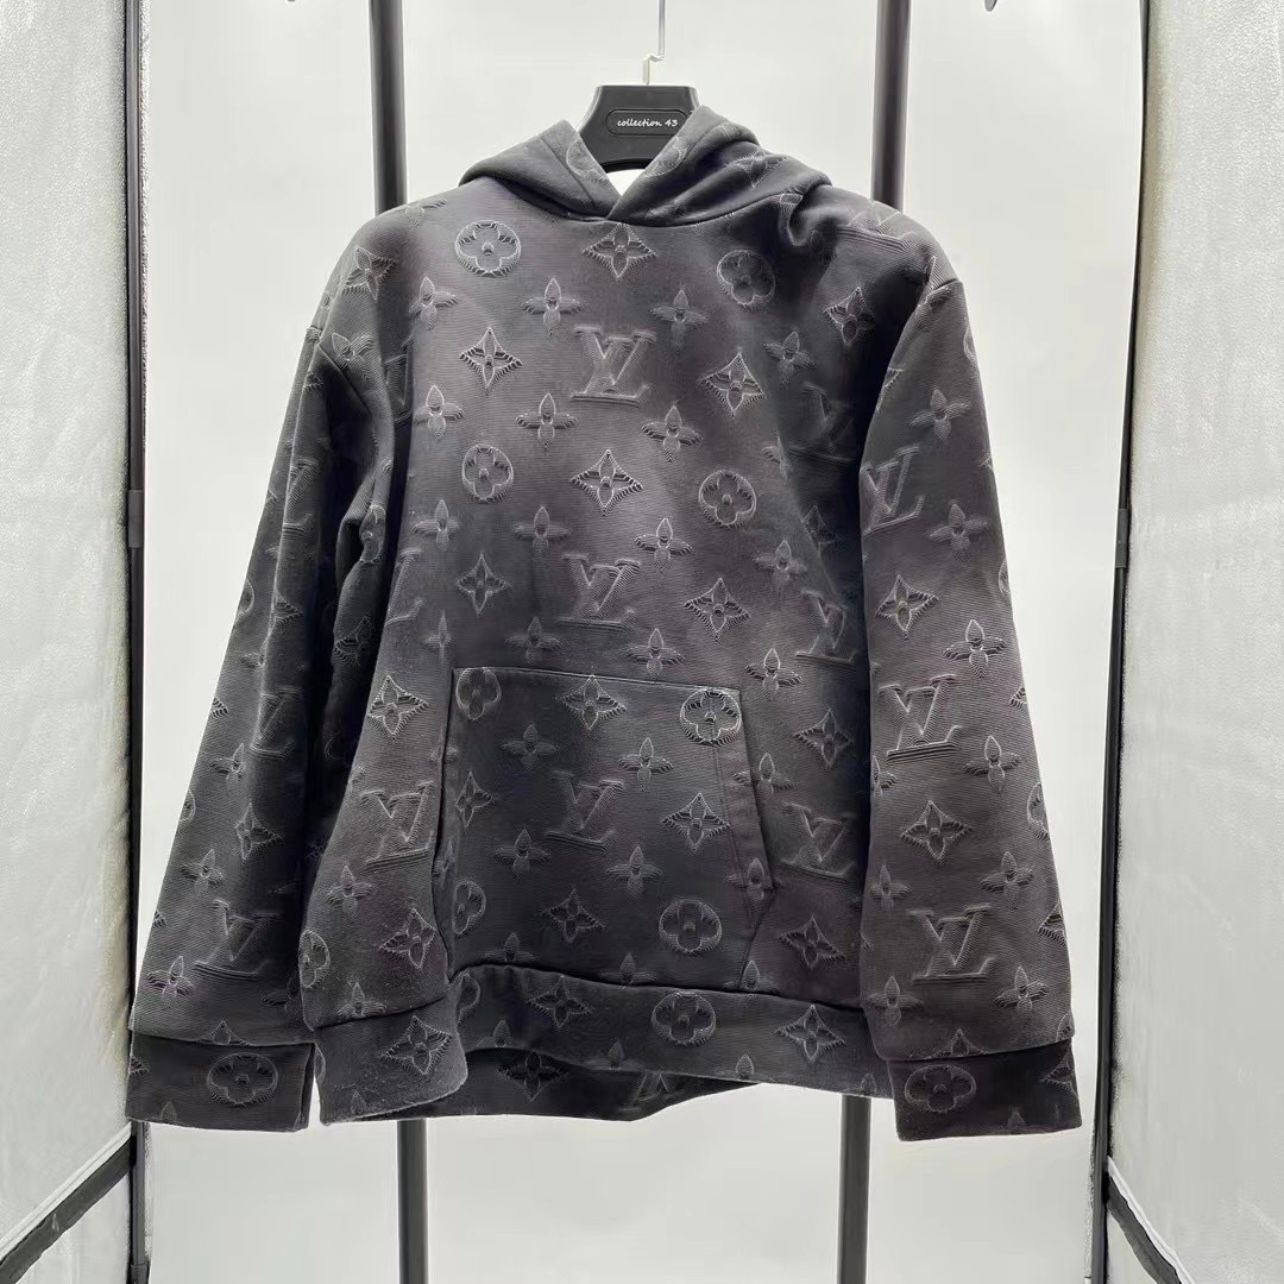 Louis Vuitton 2021 2054 Hoodie - Black Sweatshirts & Hoodies